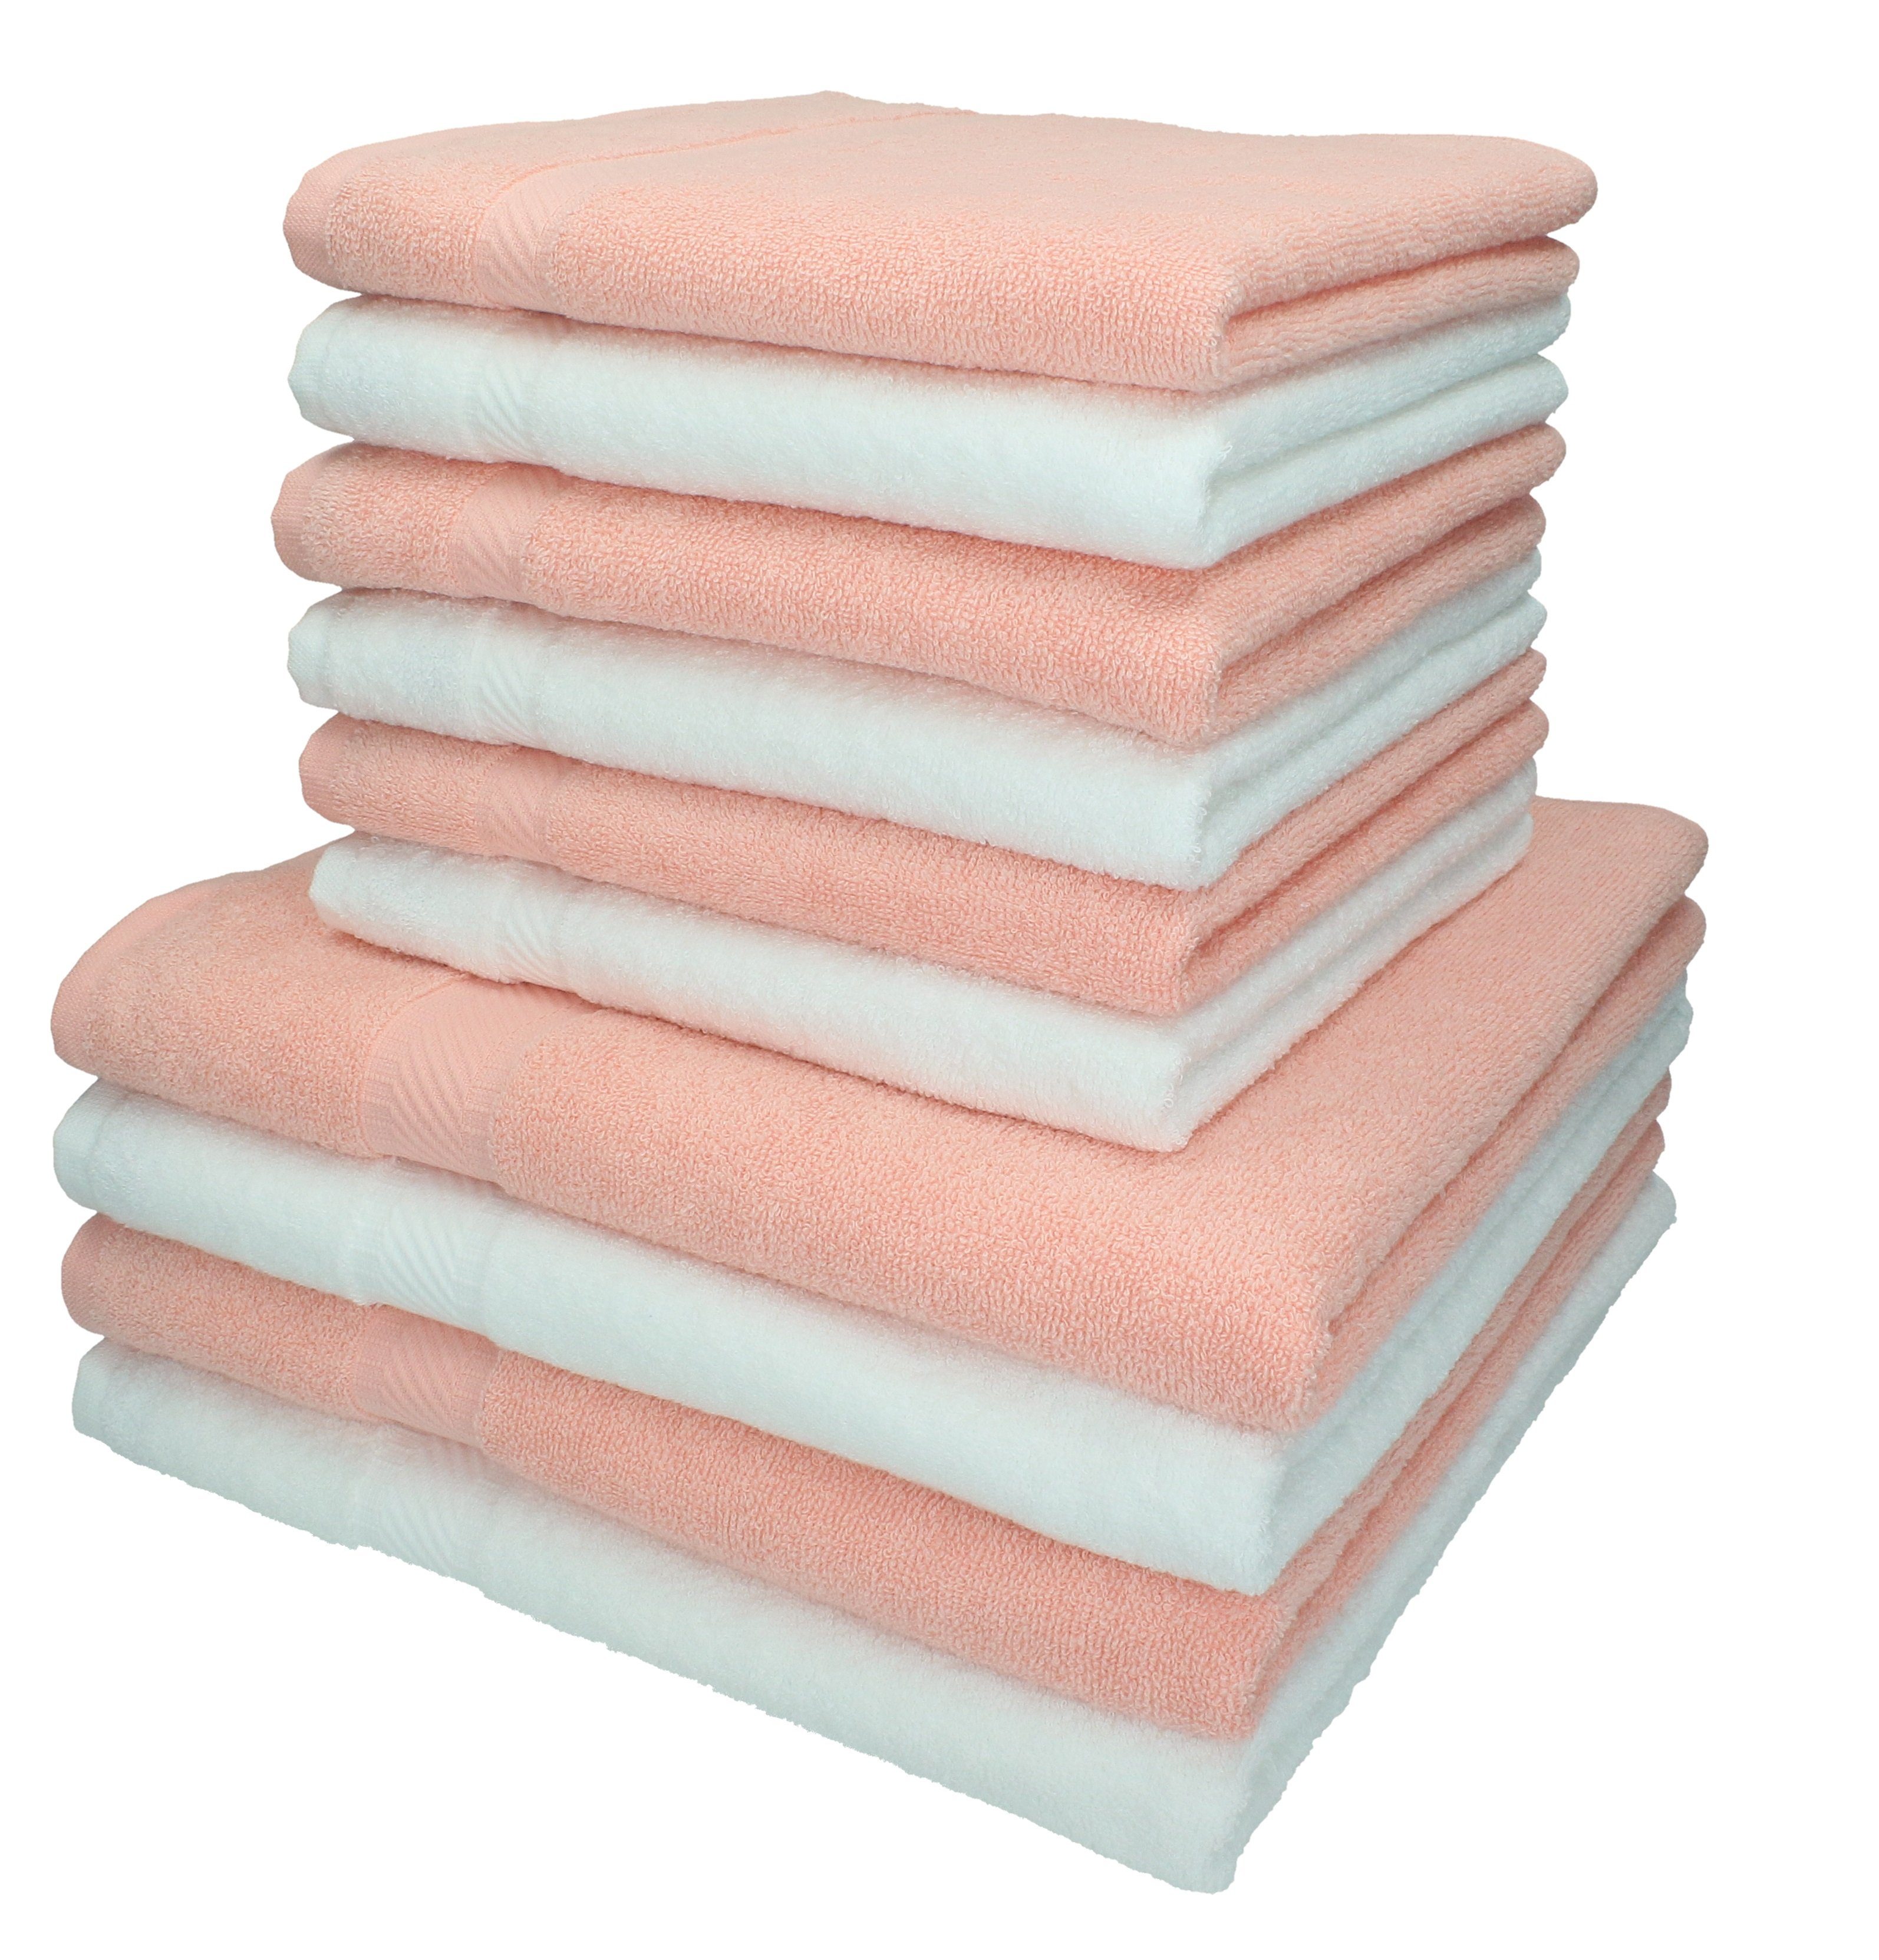 Betz Handtuch Set 10-TLG. Handtuch-Set Palermo Farbe weiß und apricot, 100% Baumwolle